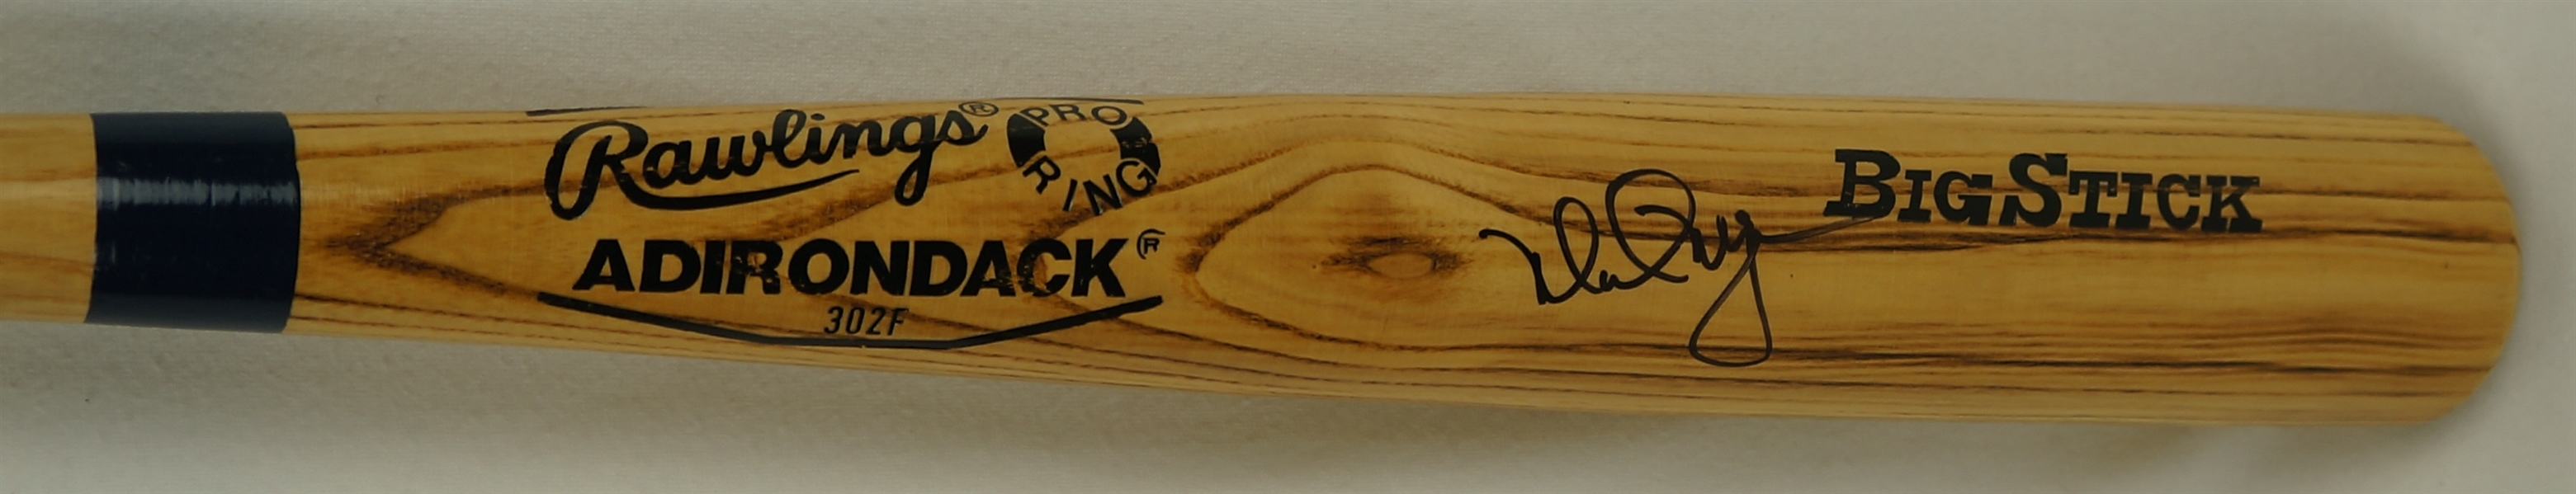 Mark McGwire Autographed Rawlings Adirondack Big Stick Bat